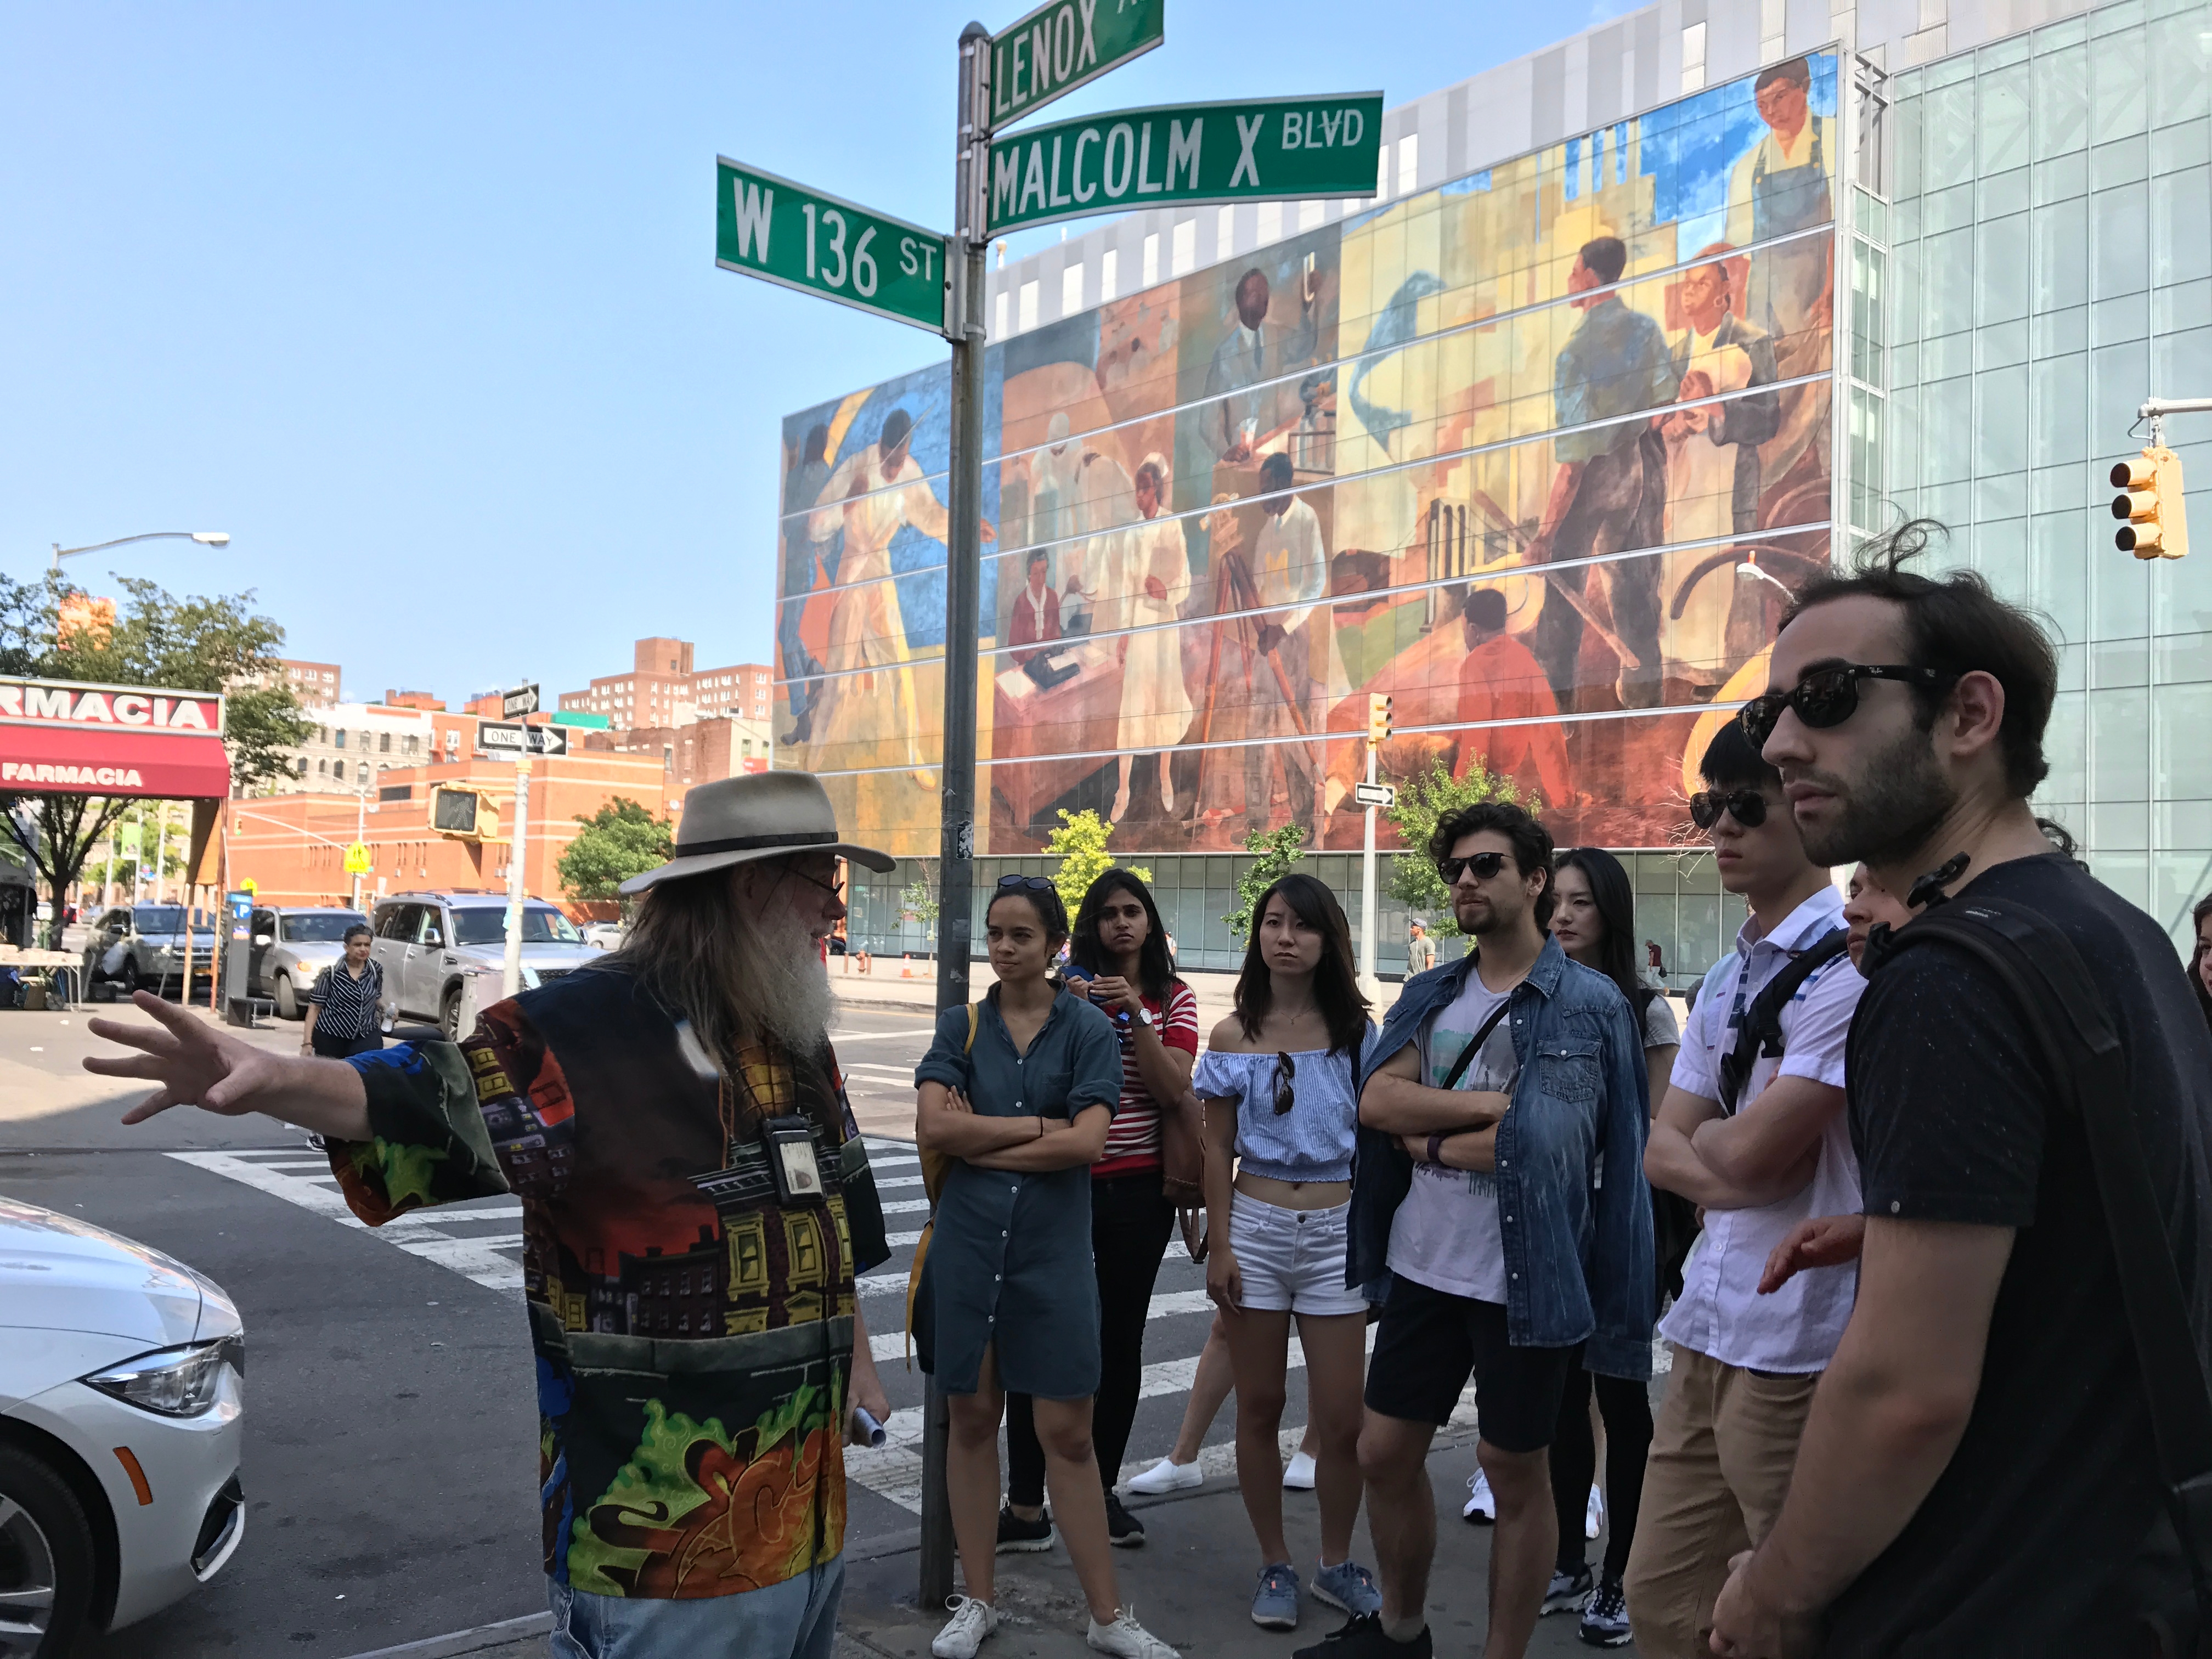 A walking tour of Harlem